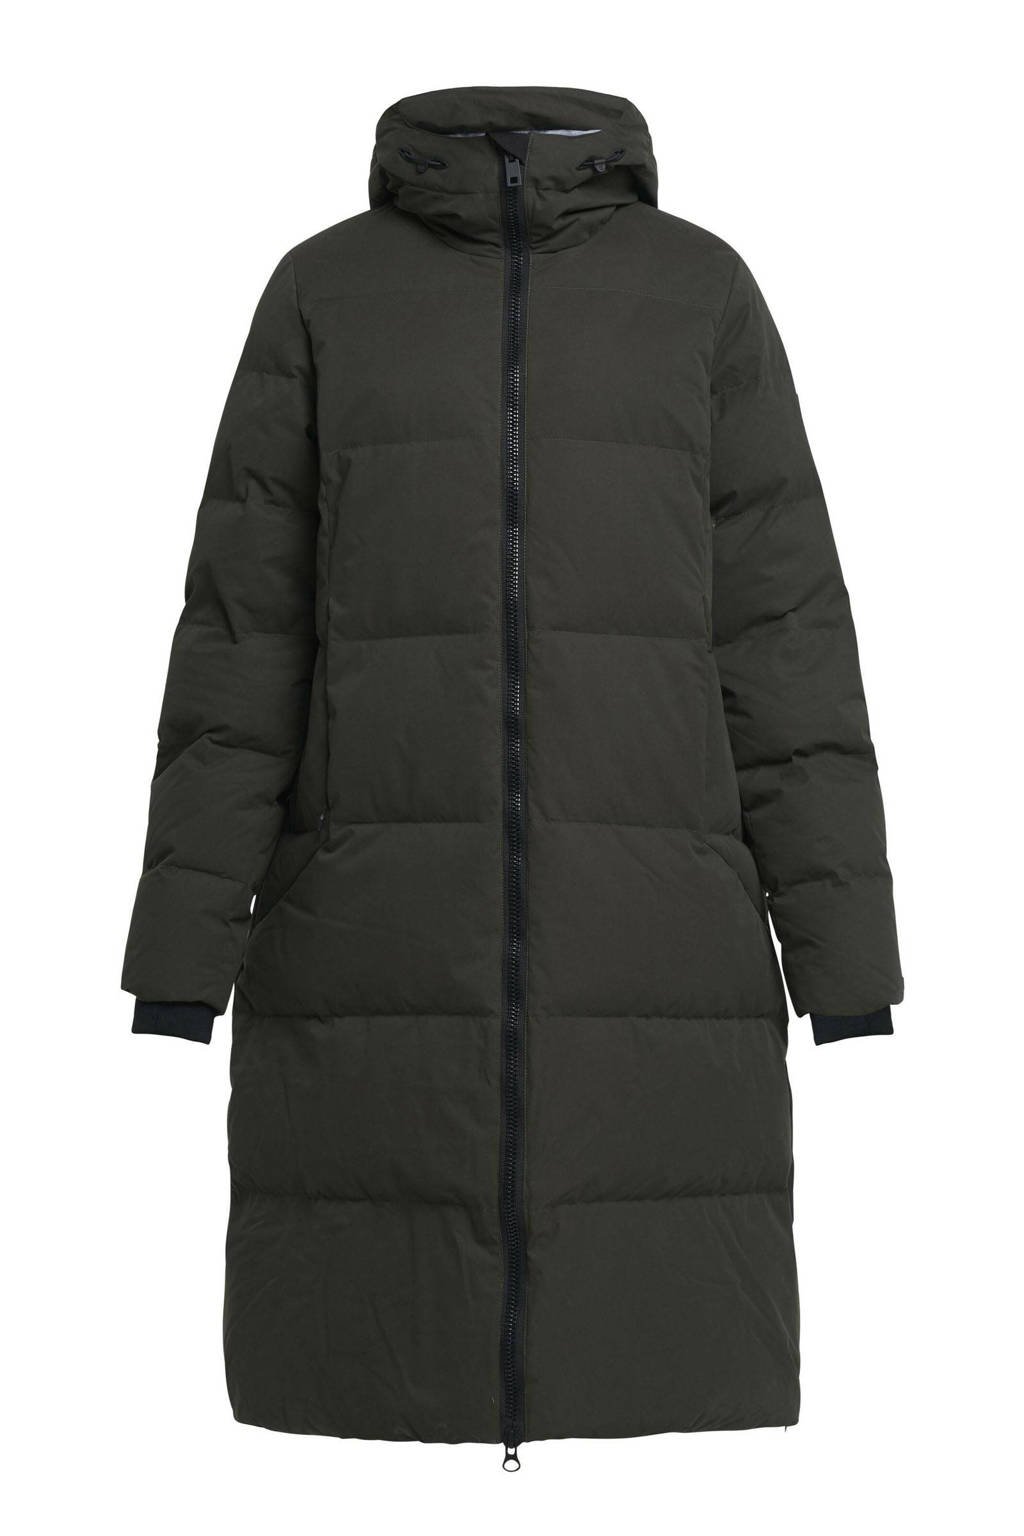 Tenson outdoor jas donkergroen | wehkamp